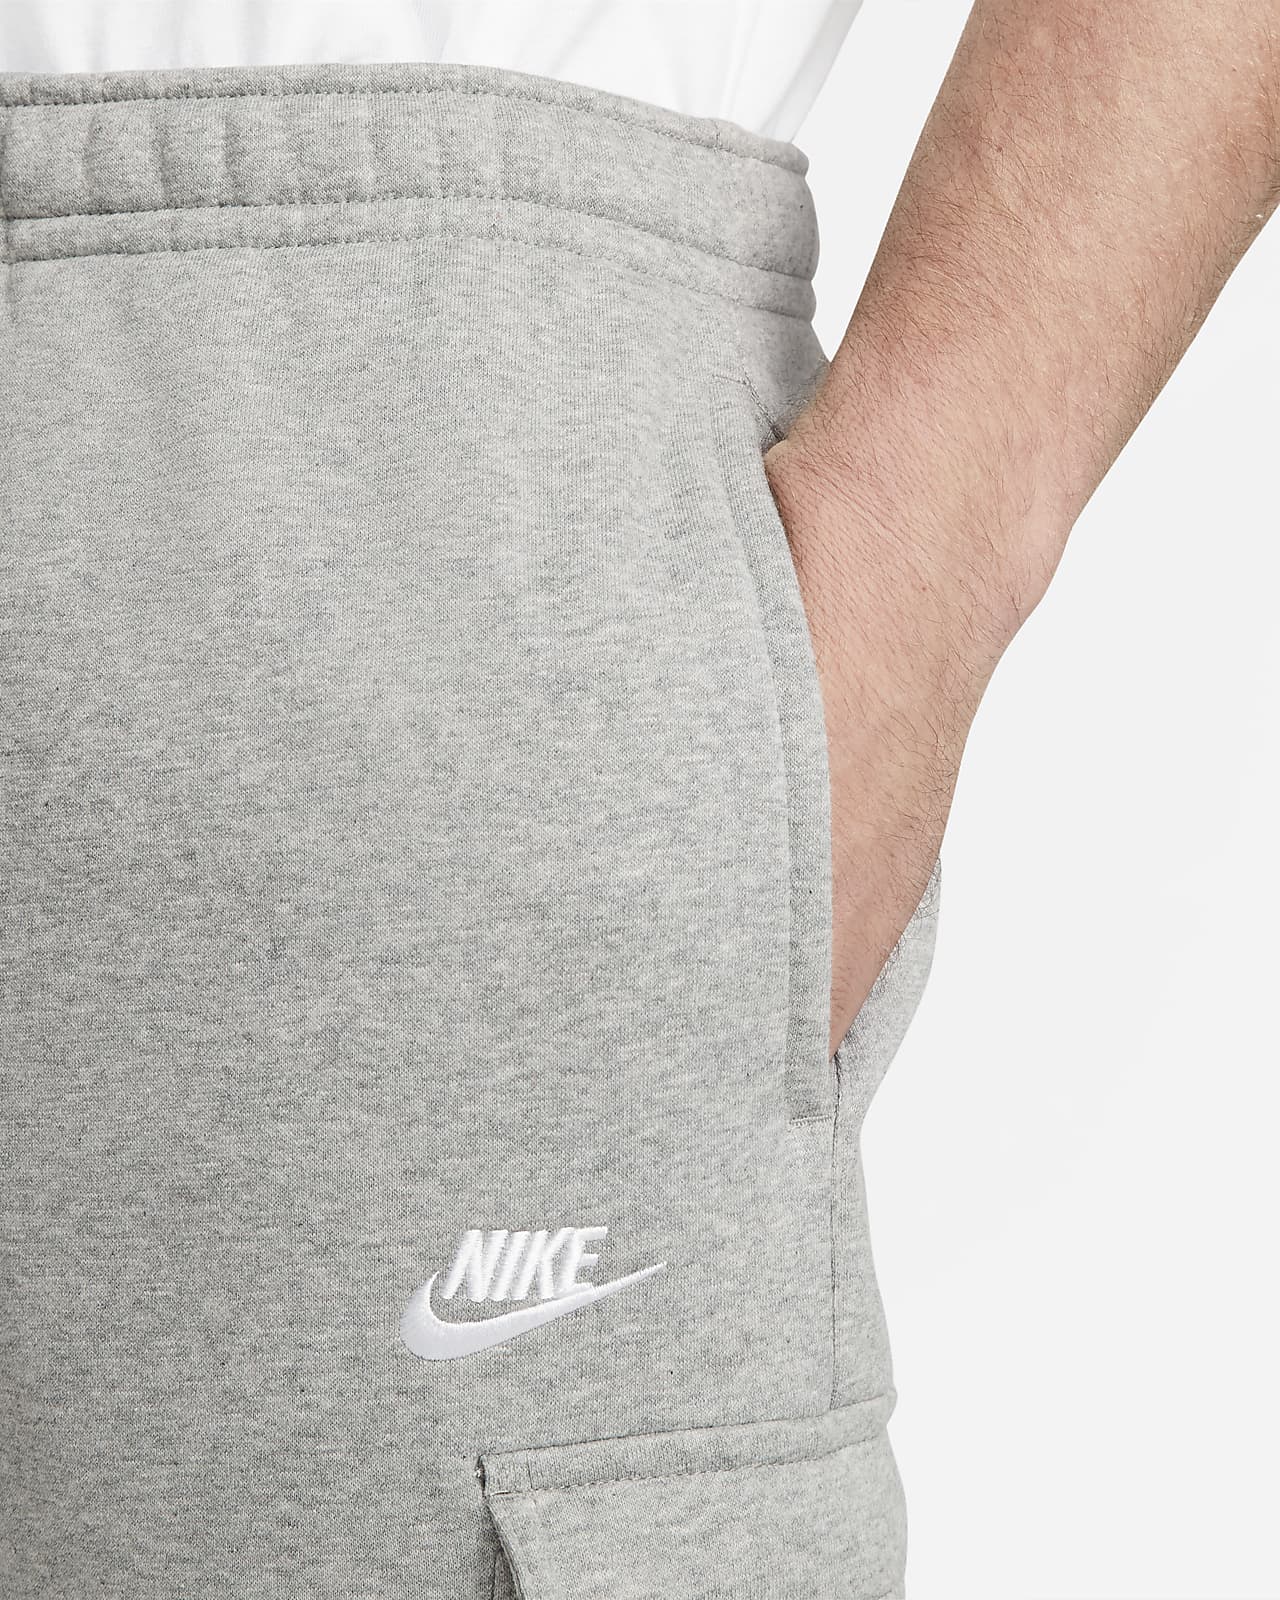 Nike Cargo - Gris - Pantalón Chándal Hombre